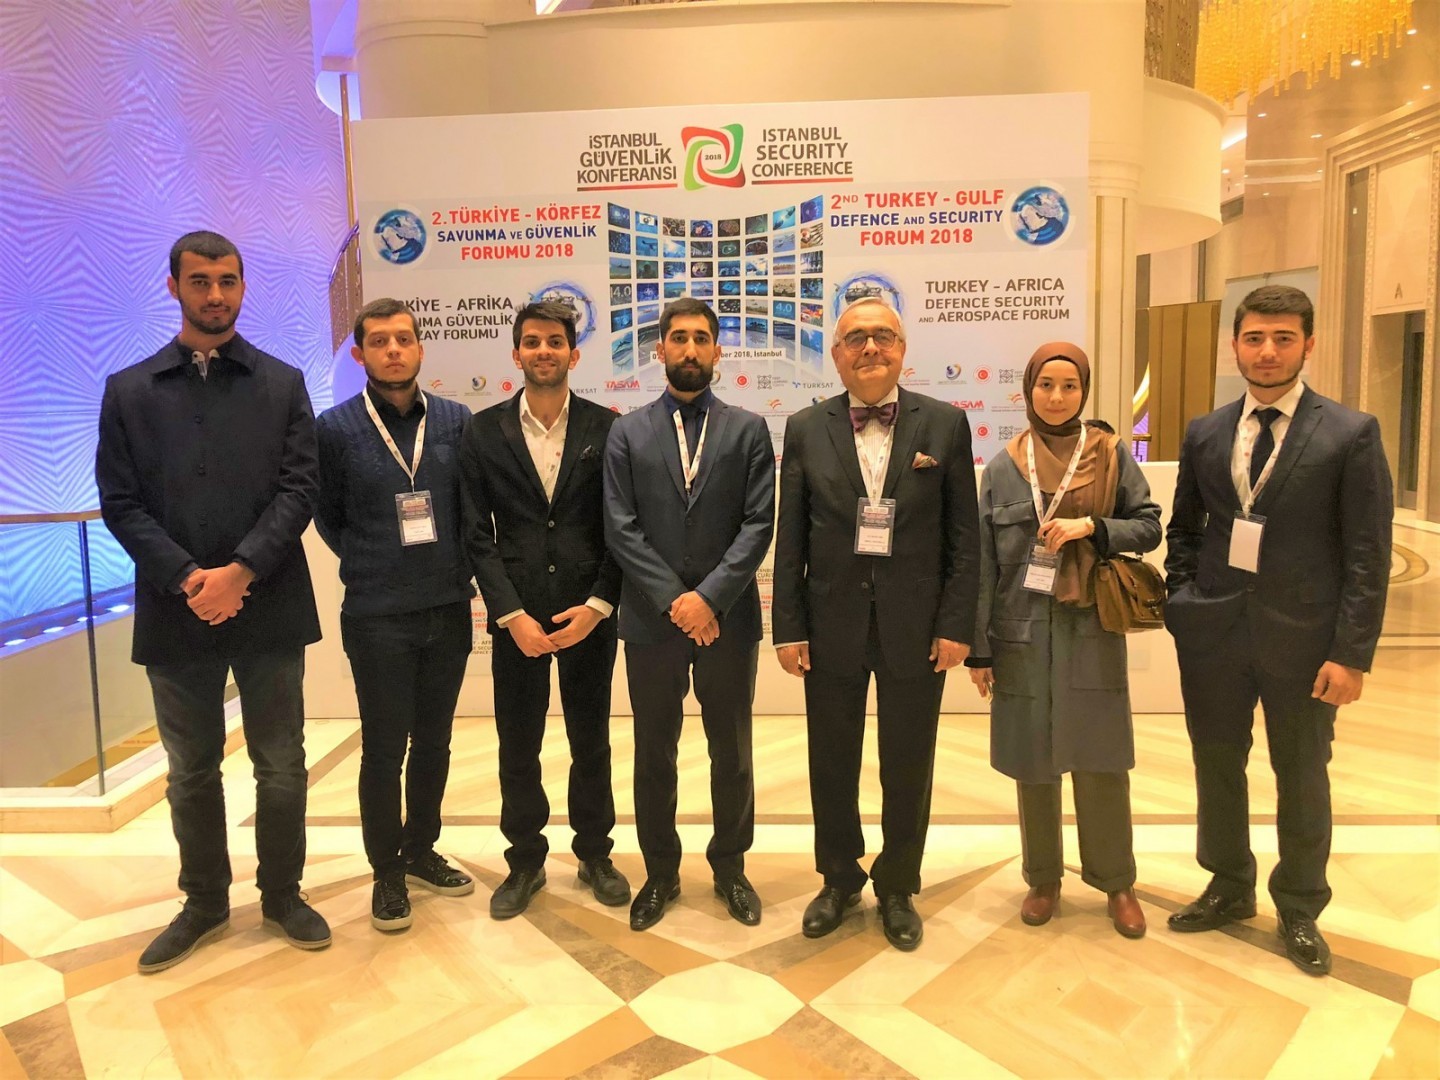 Bölgesel Araştırma Merkezi öğrencilerimiz, 2018 İstanbul Güvenlik Konferansı'na katılım sağladılar